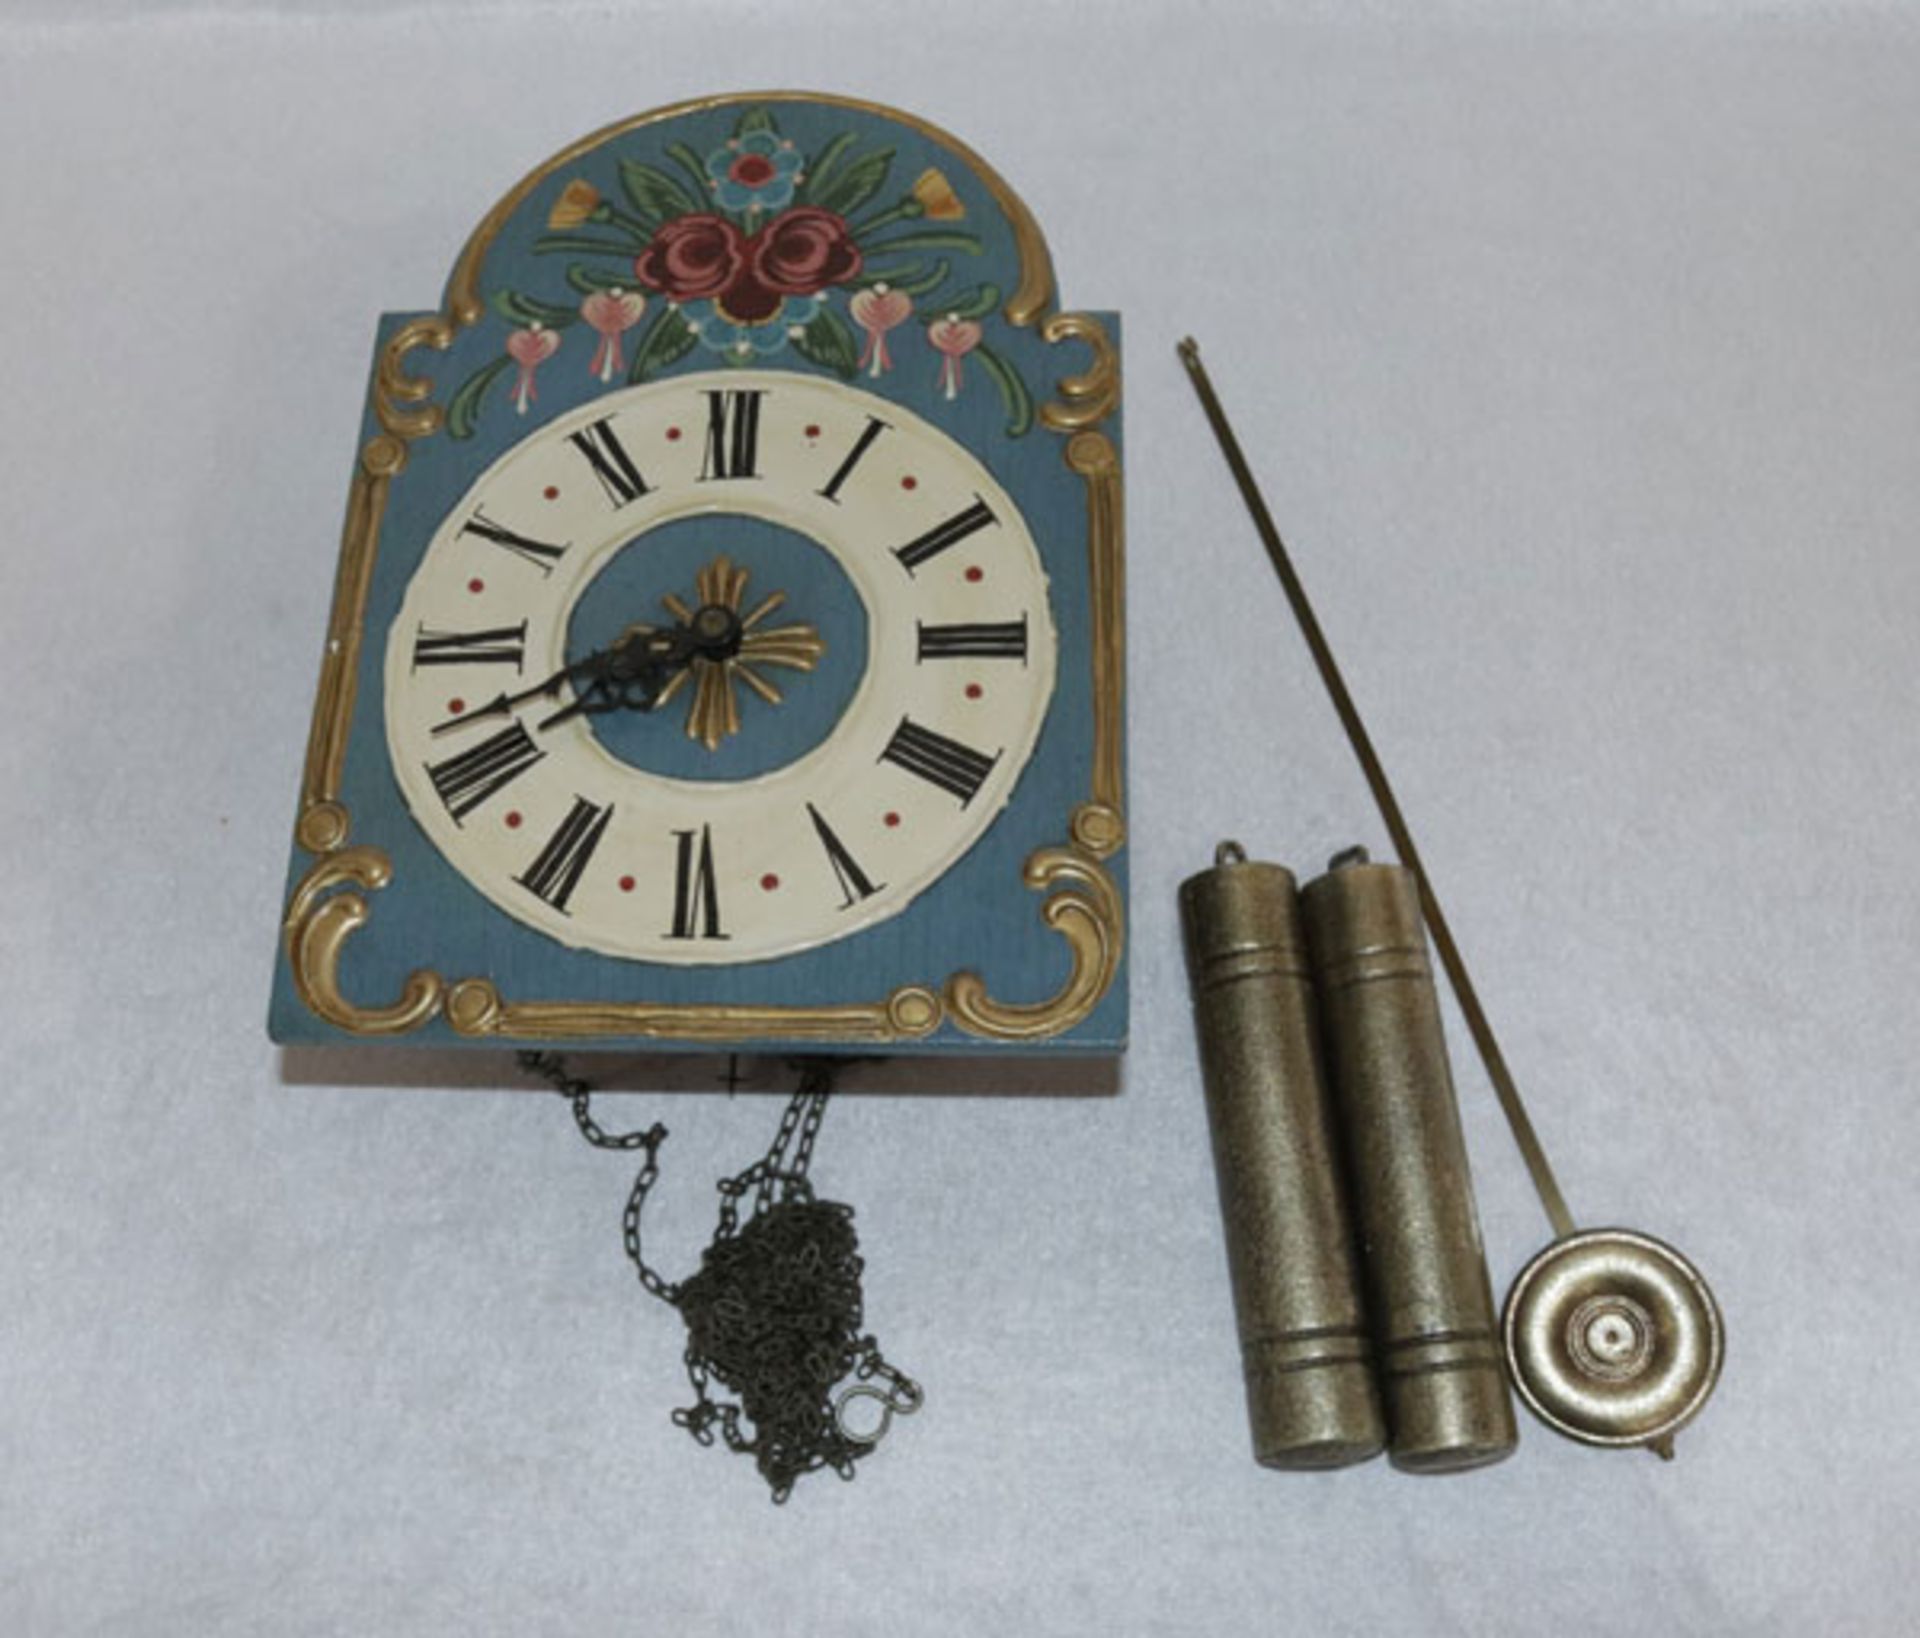 Wanduhr mit bäuerlicher Bemalung, Pendel und Gewichte und Glocke, H 29 cm, B 21 cm, T 9 cm, Funktion